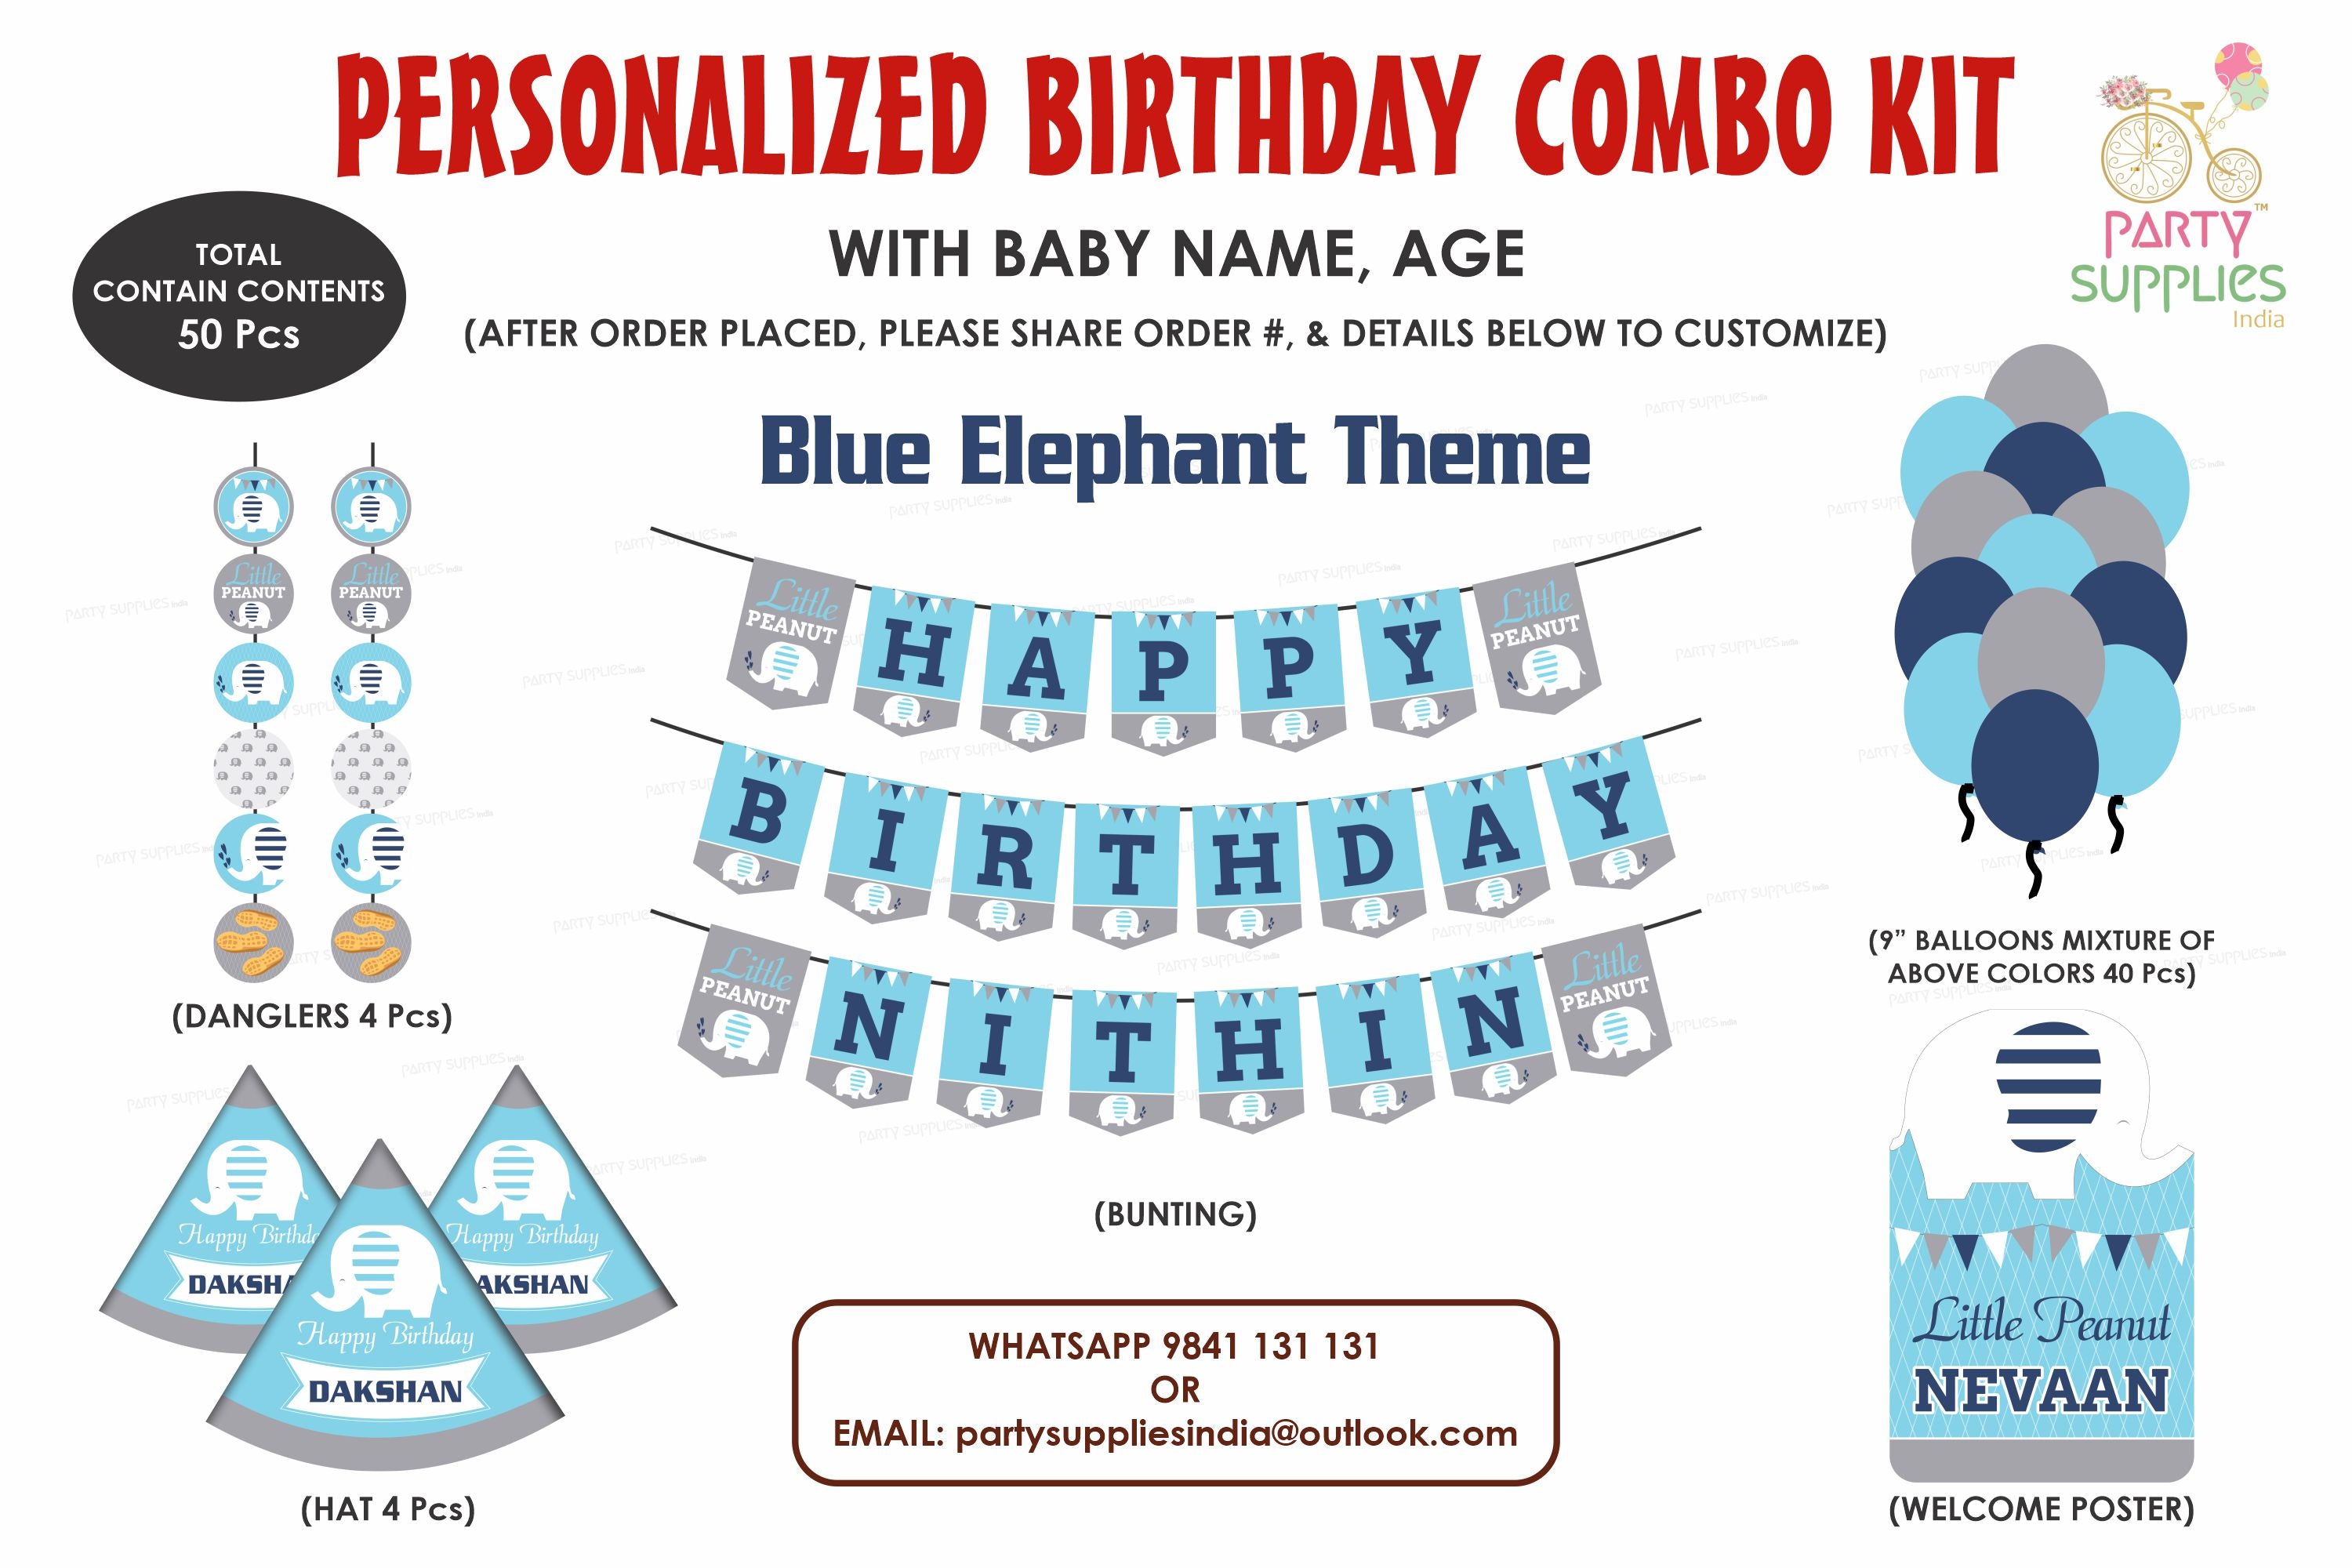 PSI Blue Elephant Theme Heritage Kit